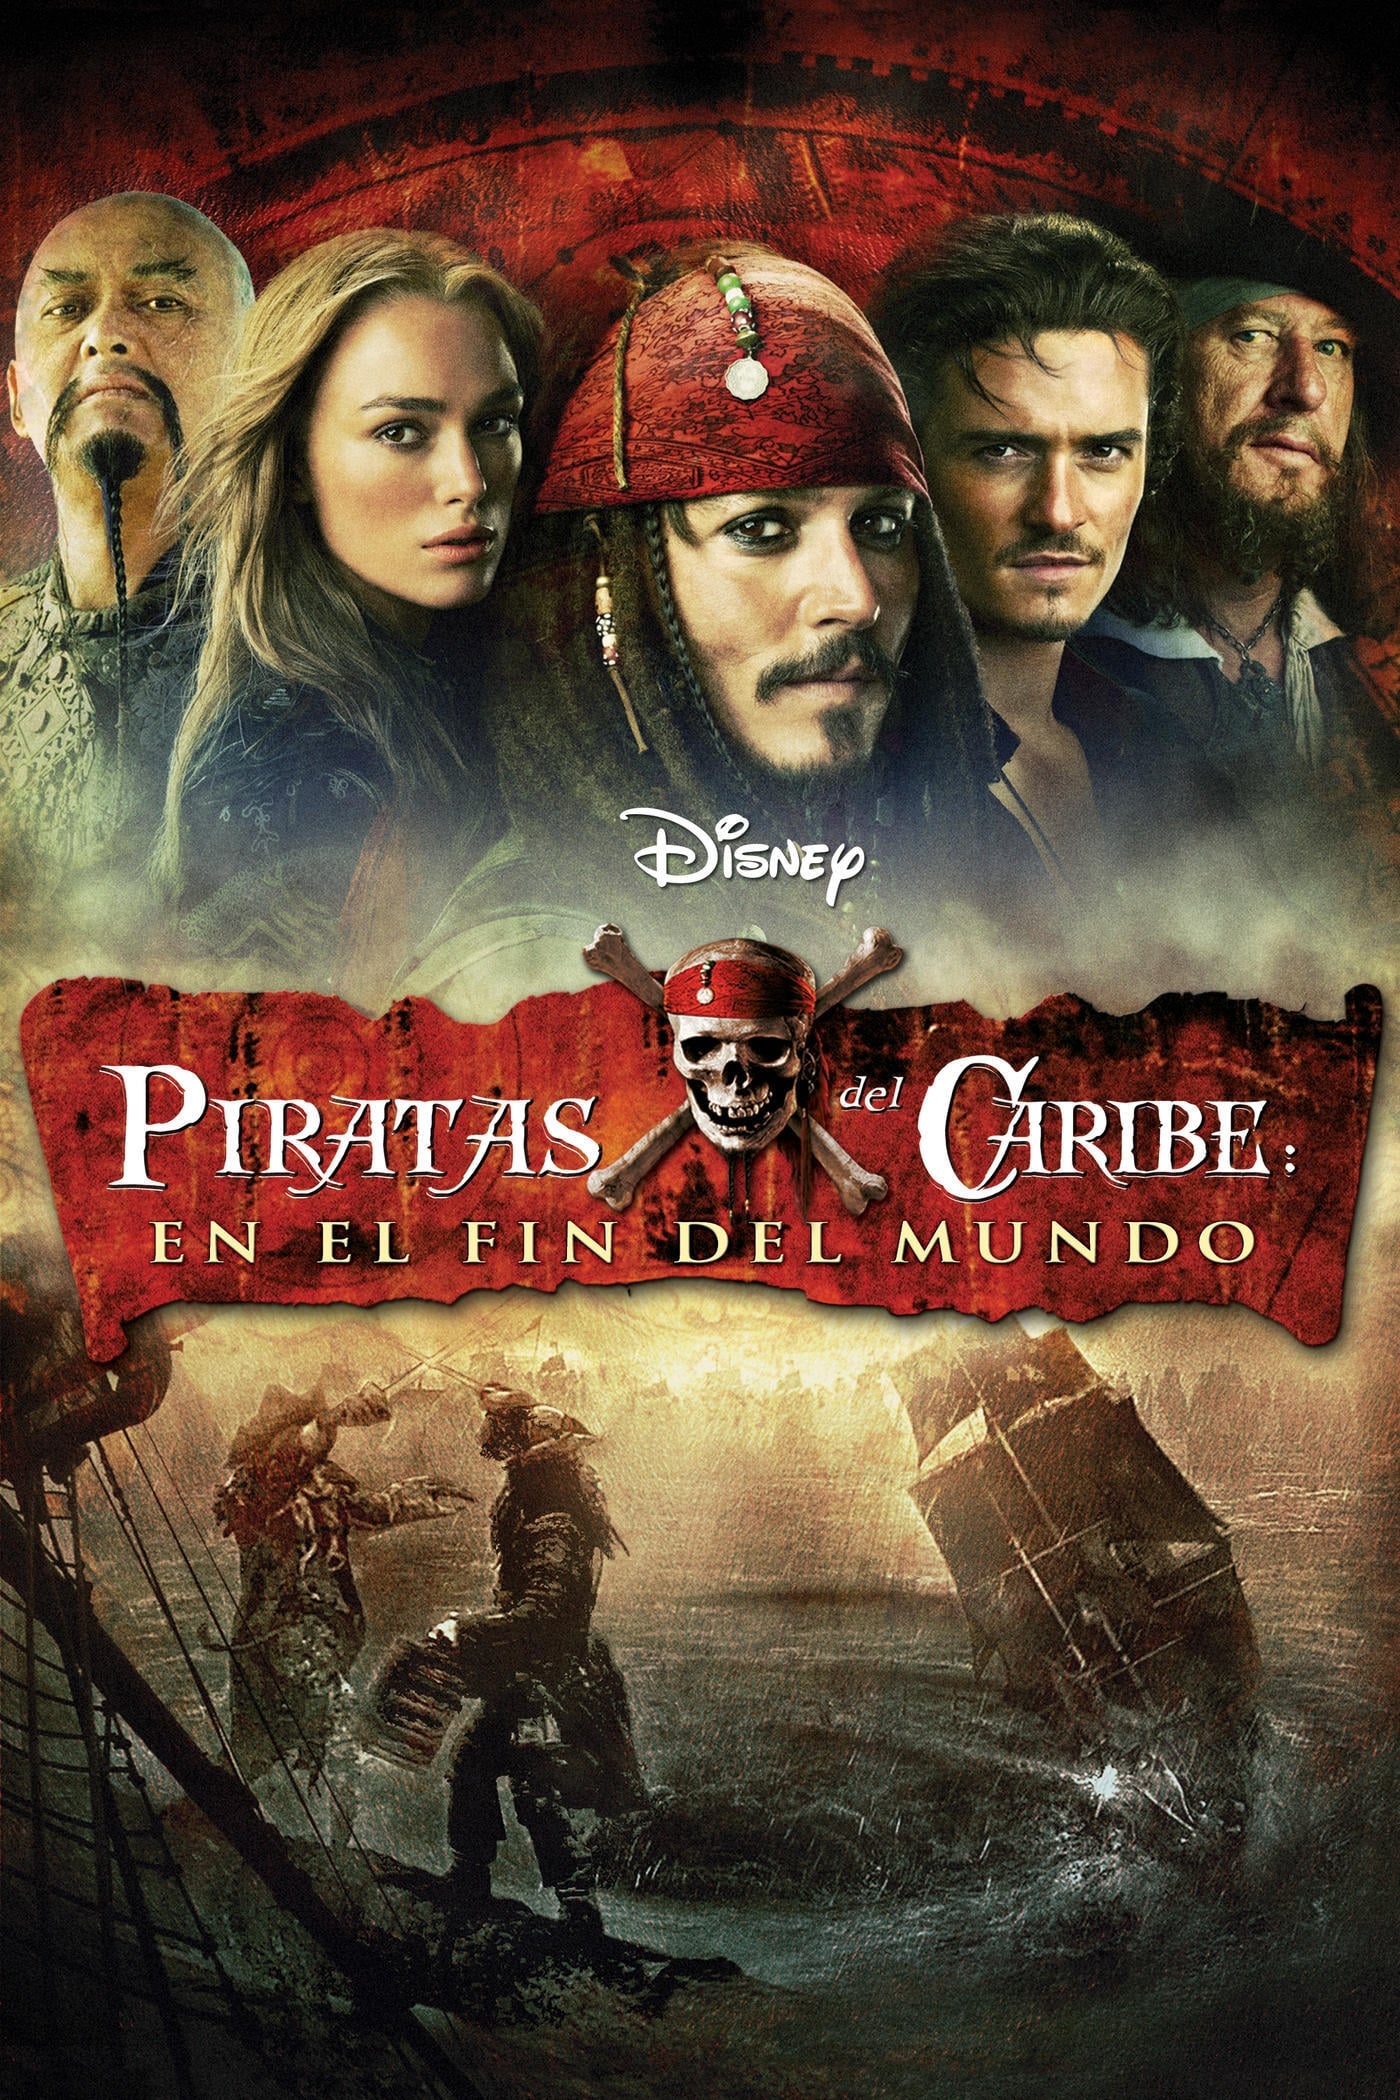 Piratas del Caribe 3 (2007) [Open Matte] WEB-DL 1080p Latino